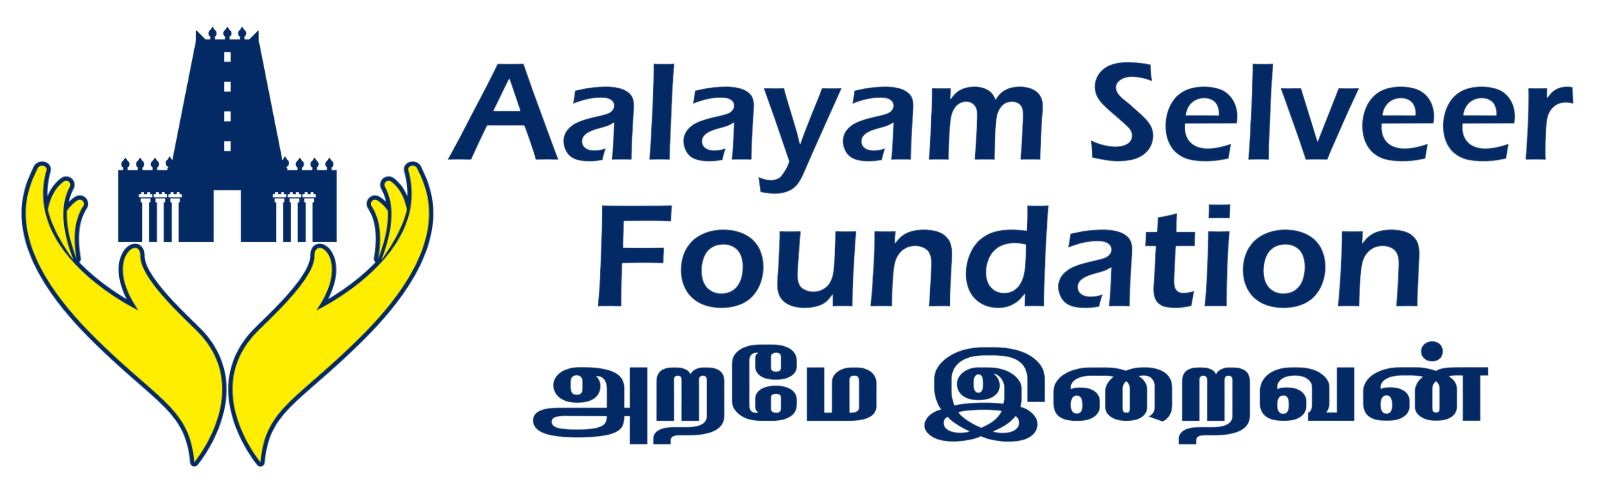 Aalayam Selveer Foundation